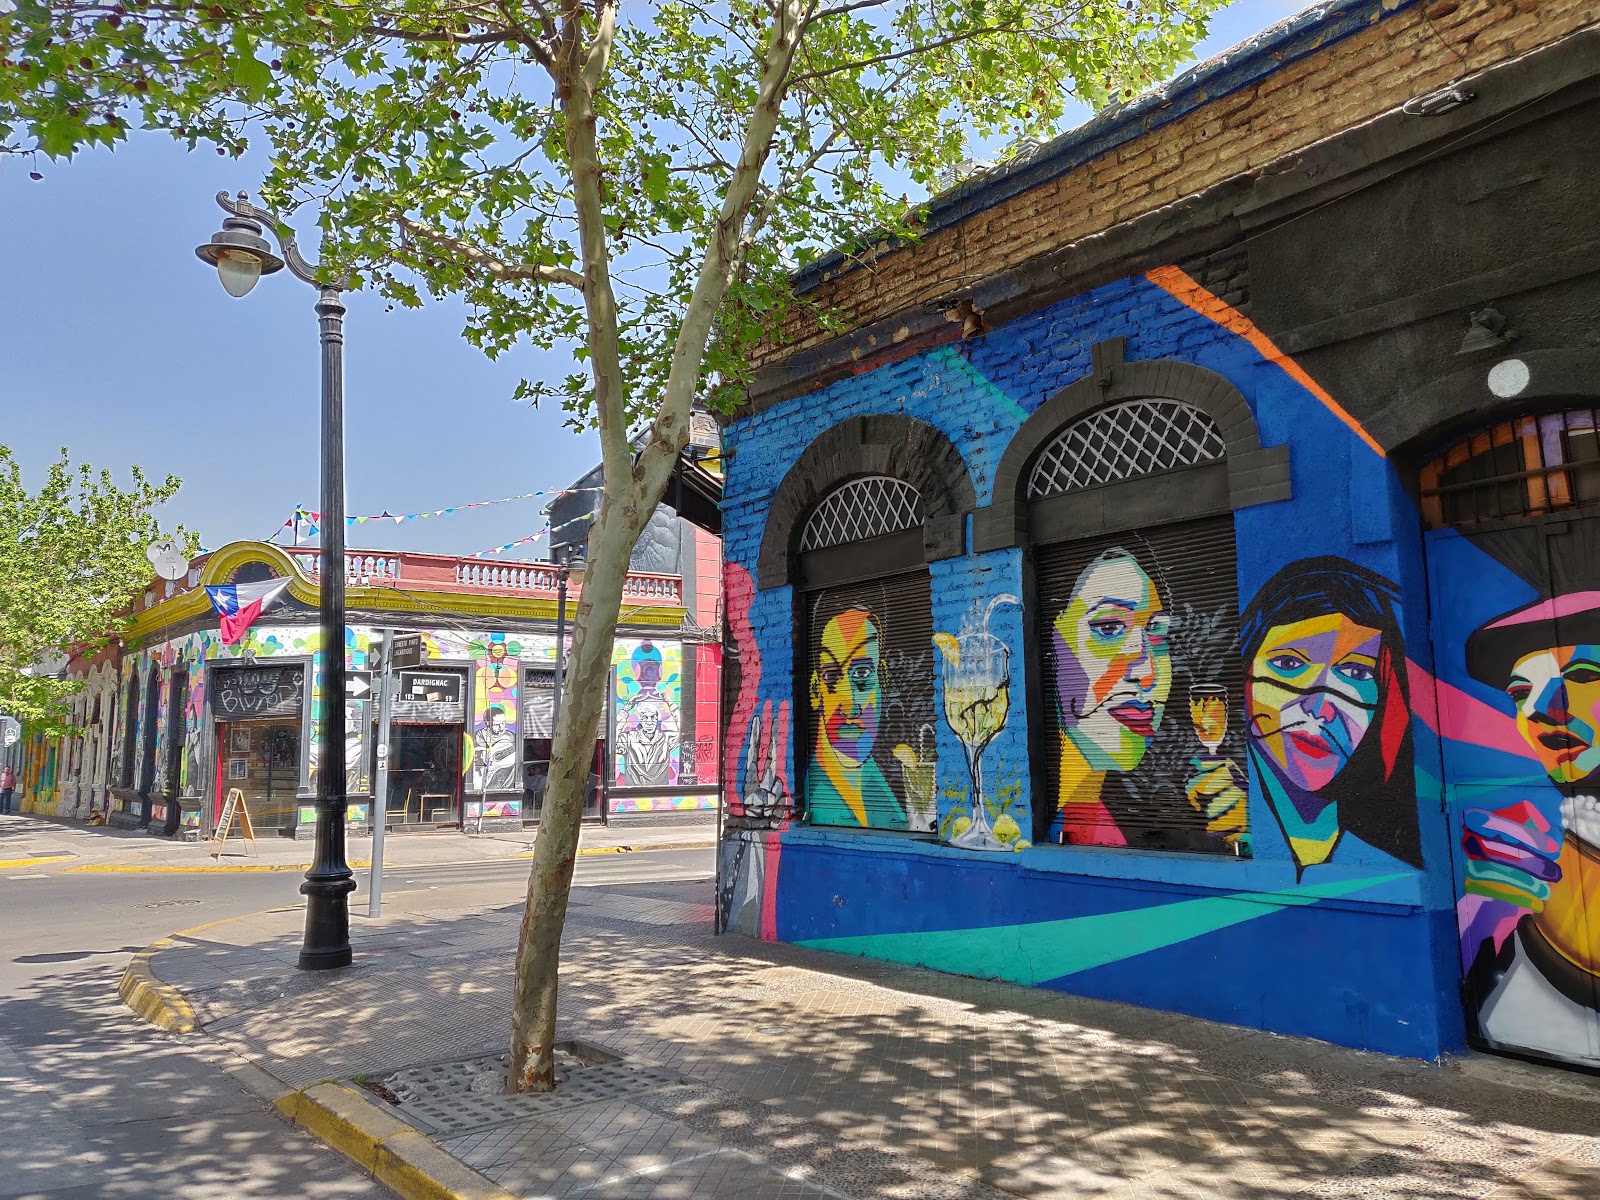 Santiago de Chile and it's murals